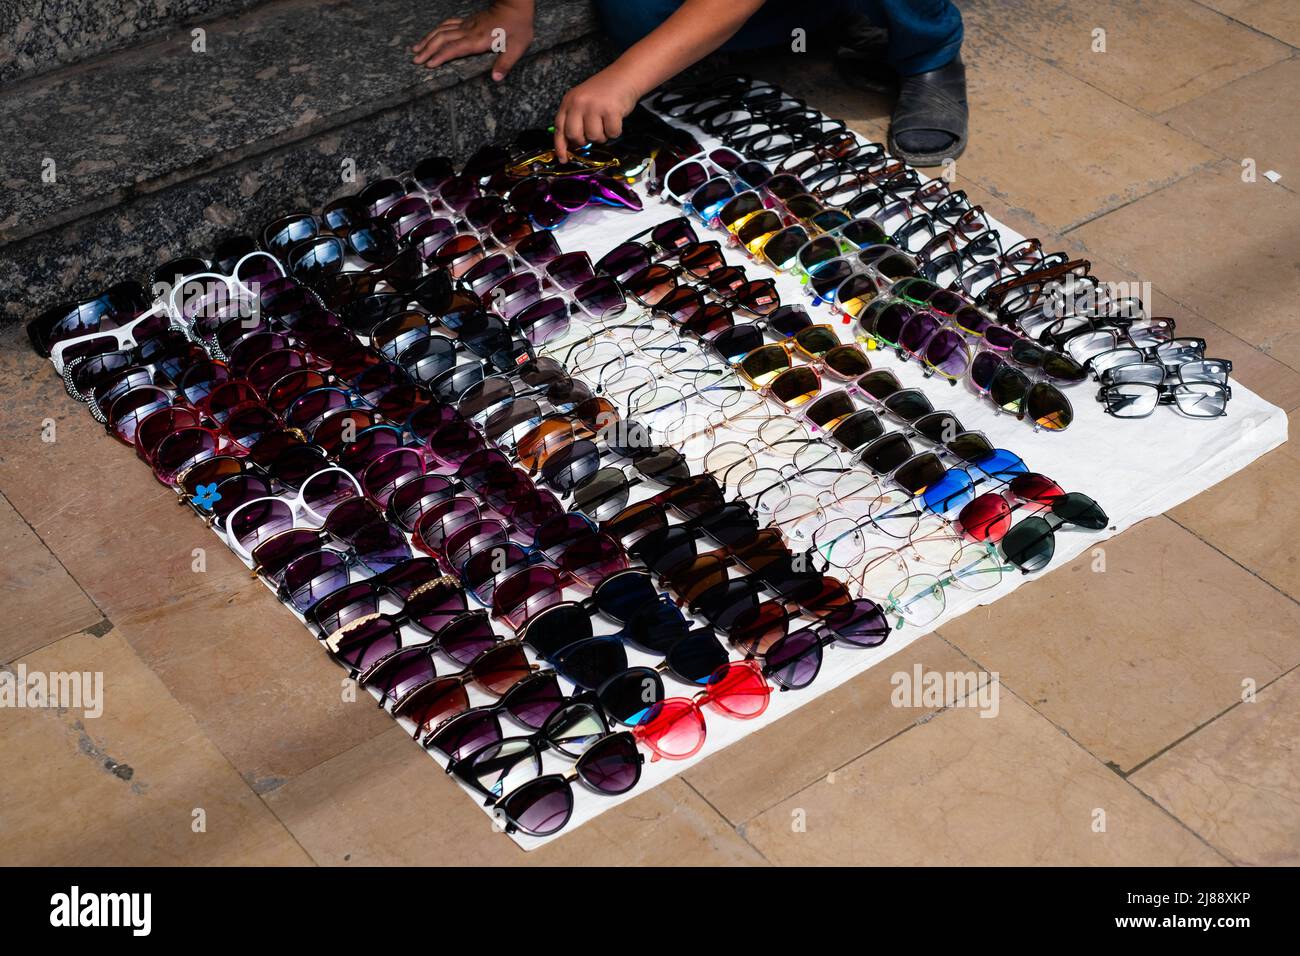 kid selling sunglasses on street Stock Photo